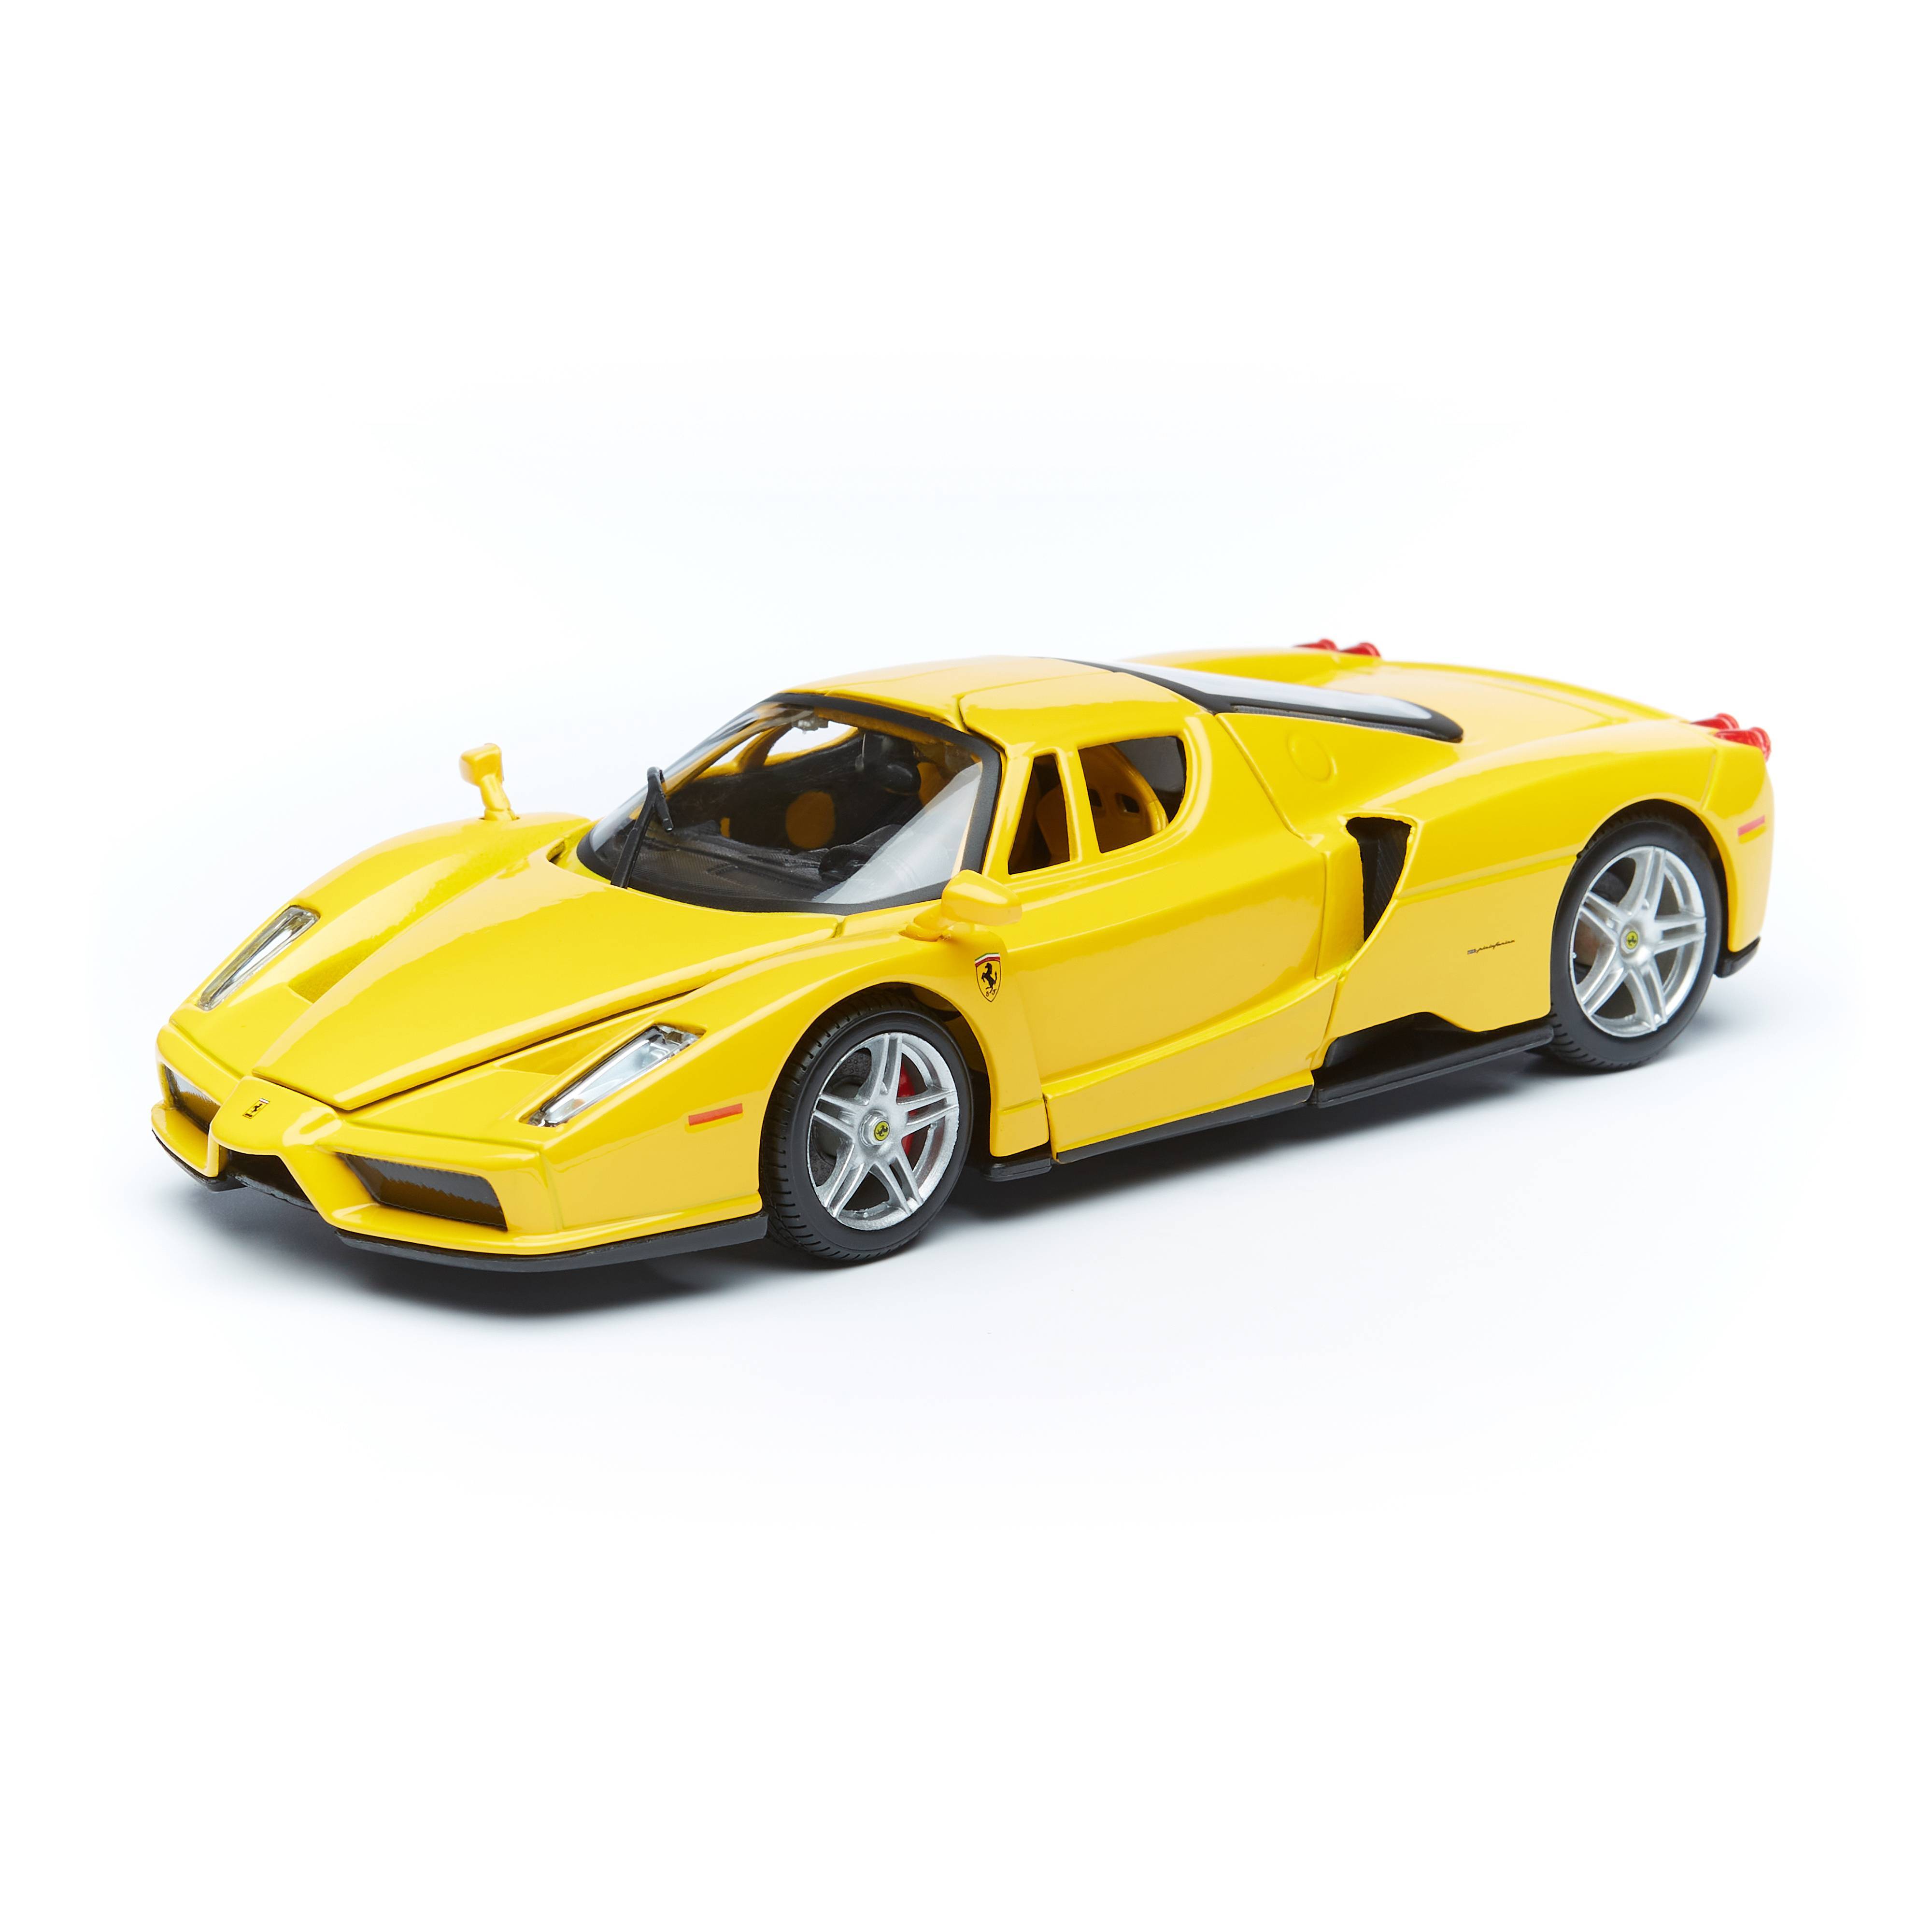 Bburago Коллекционная машинка Феррари 1:24 Ferrari Enzo, жёлтая, 18-26006 коллекционная машинка bburago renault megane trophy желтый ралли 1 24